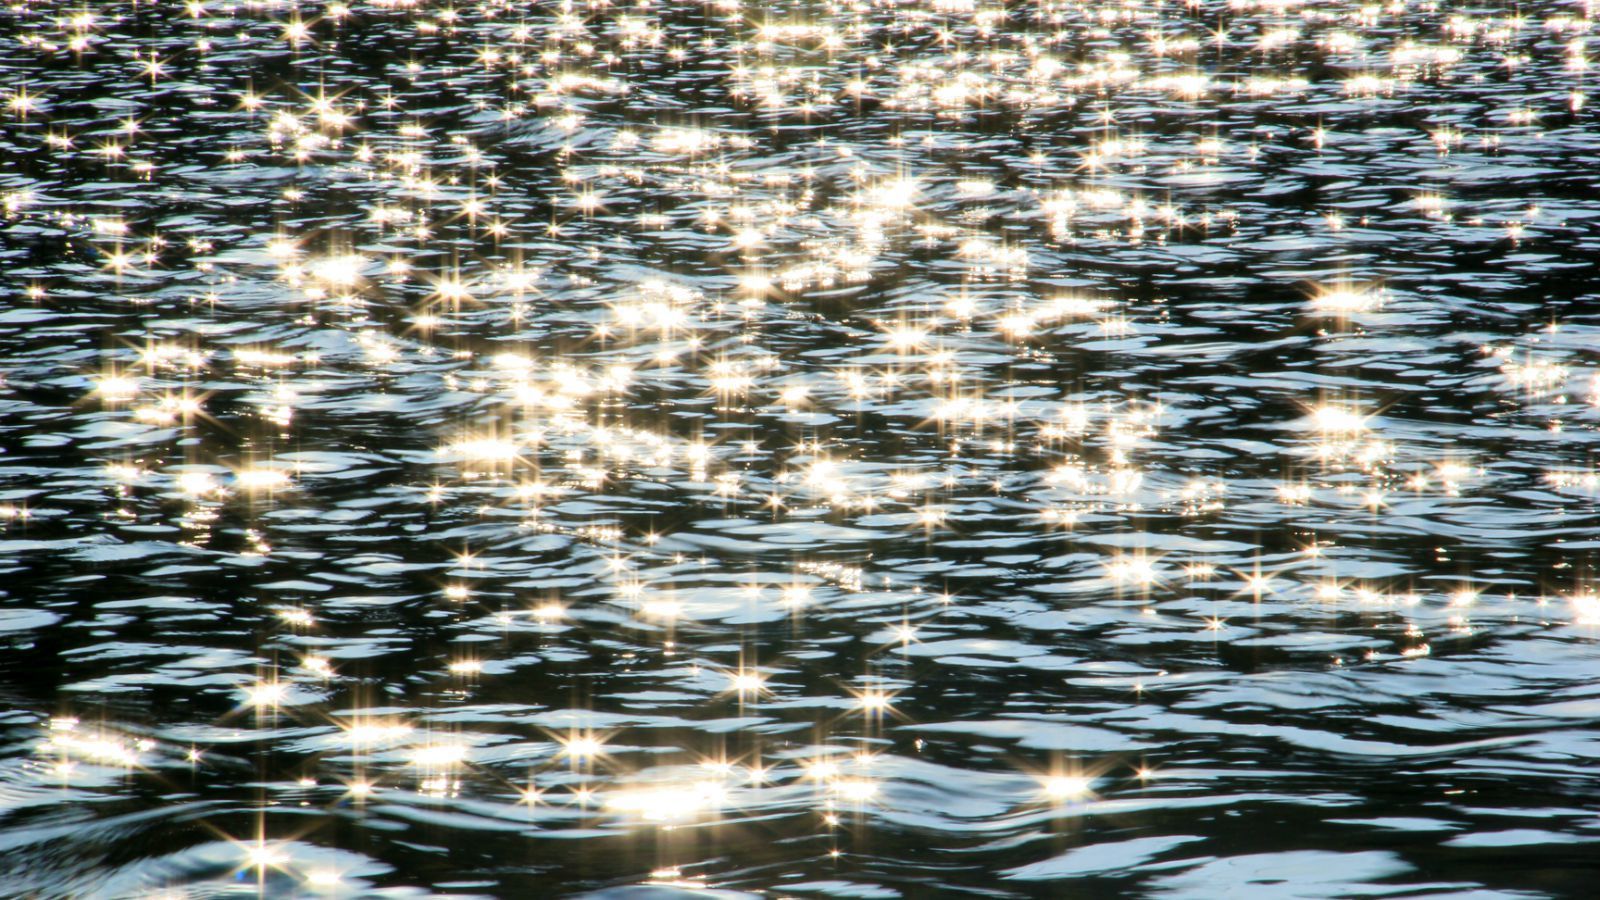 经过汪口,村旁的永川河碧波荡漾,阳光洒在河上,波光粼粼,一阵阵风